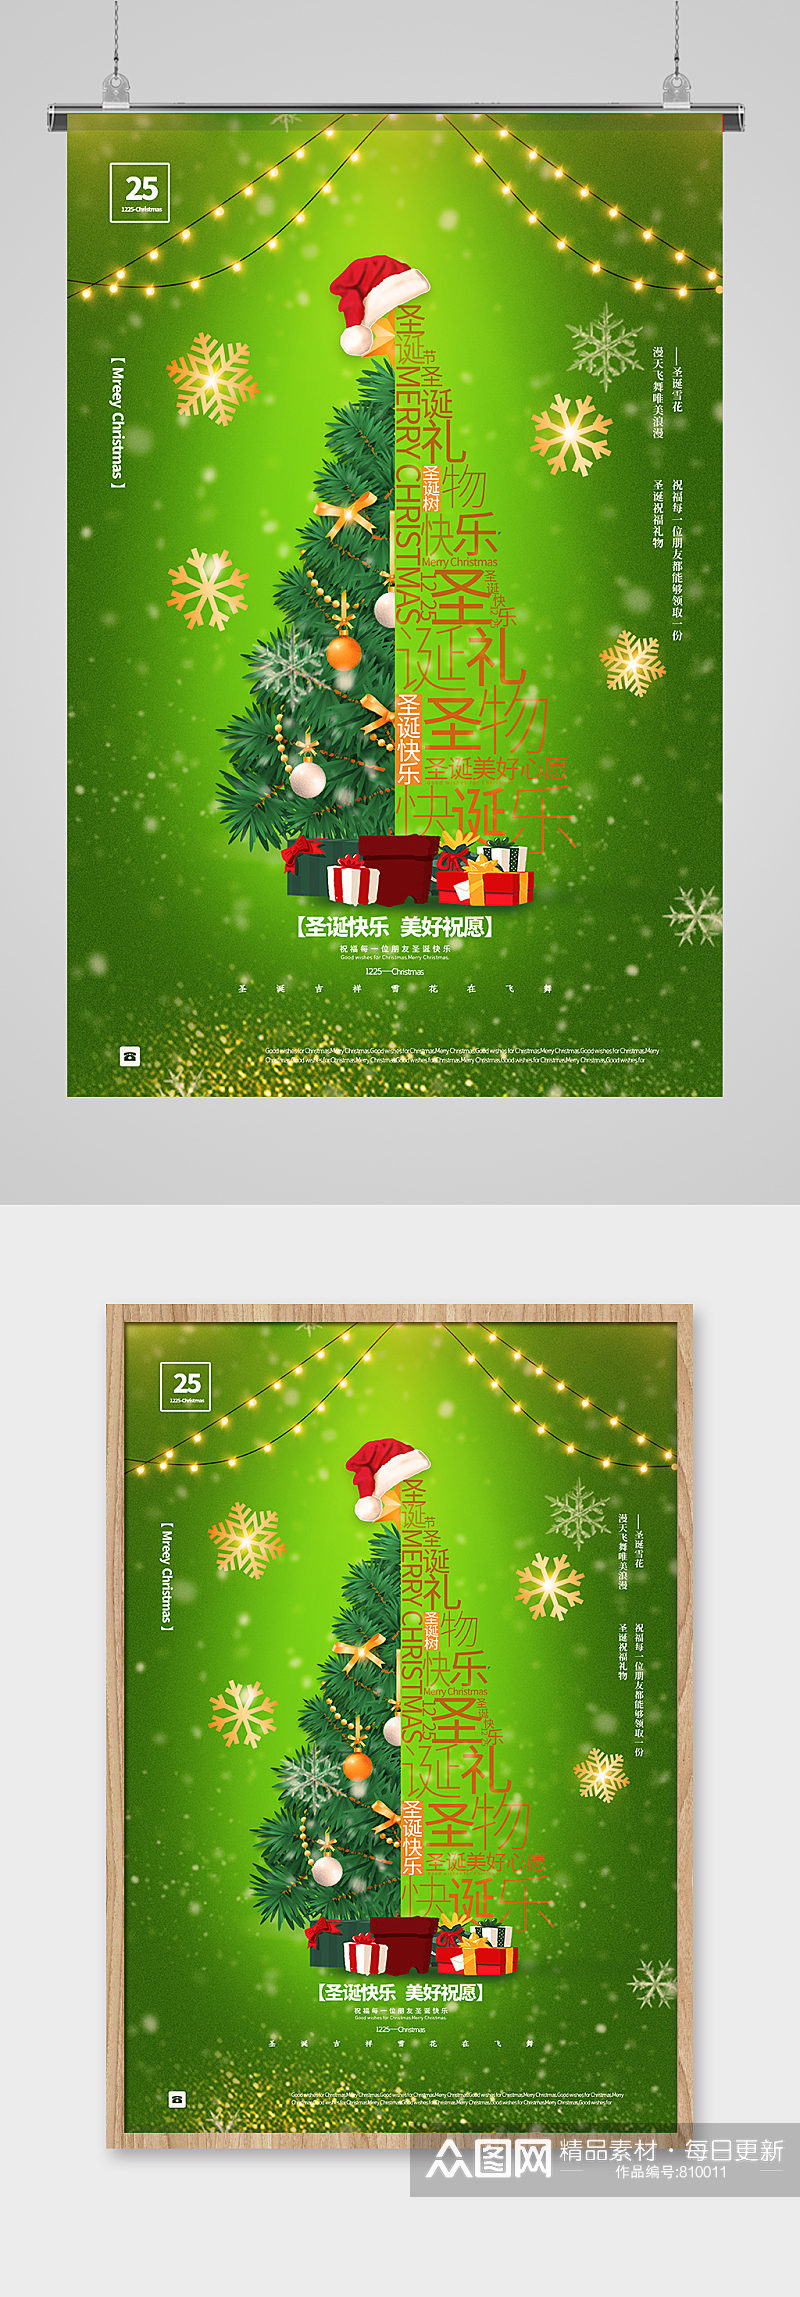 绿色简洁圣诞节圣诞树海报素材